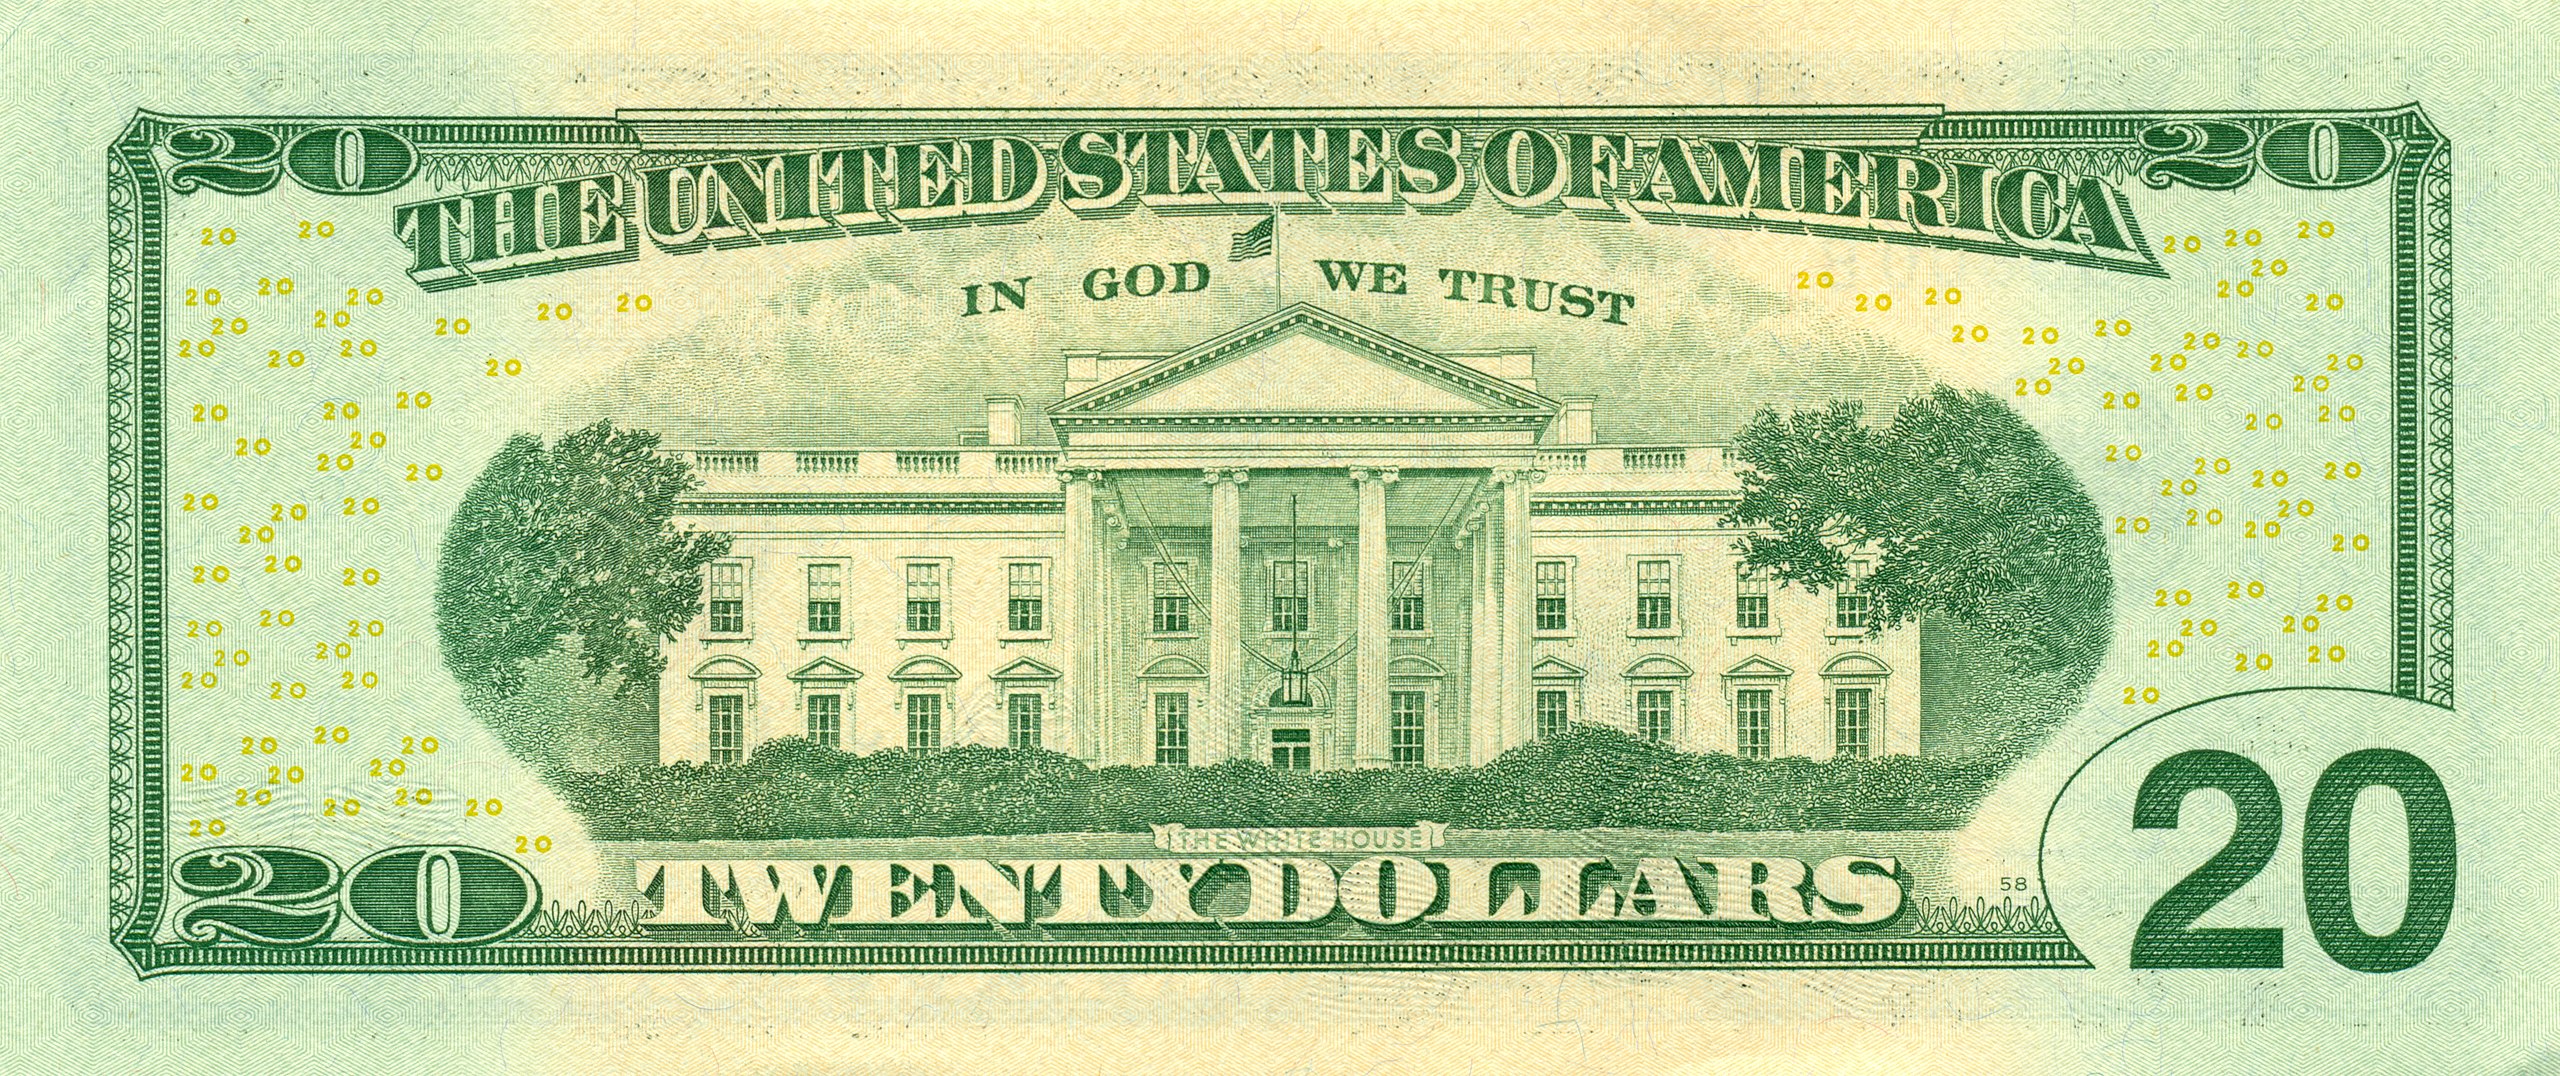 Billets de banque en dollars américains — Wikipédia